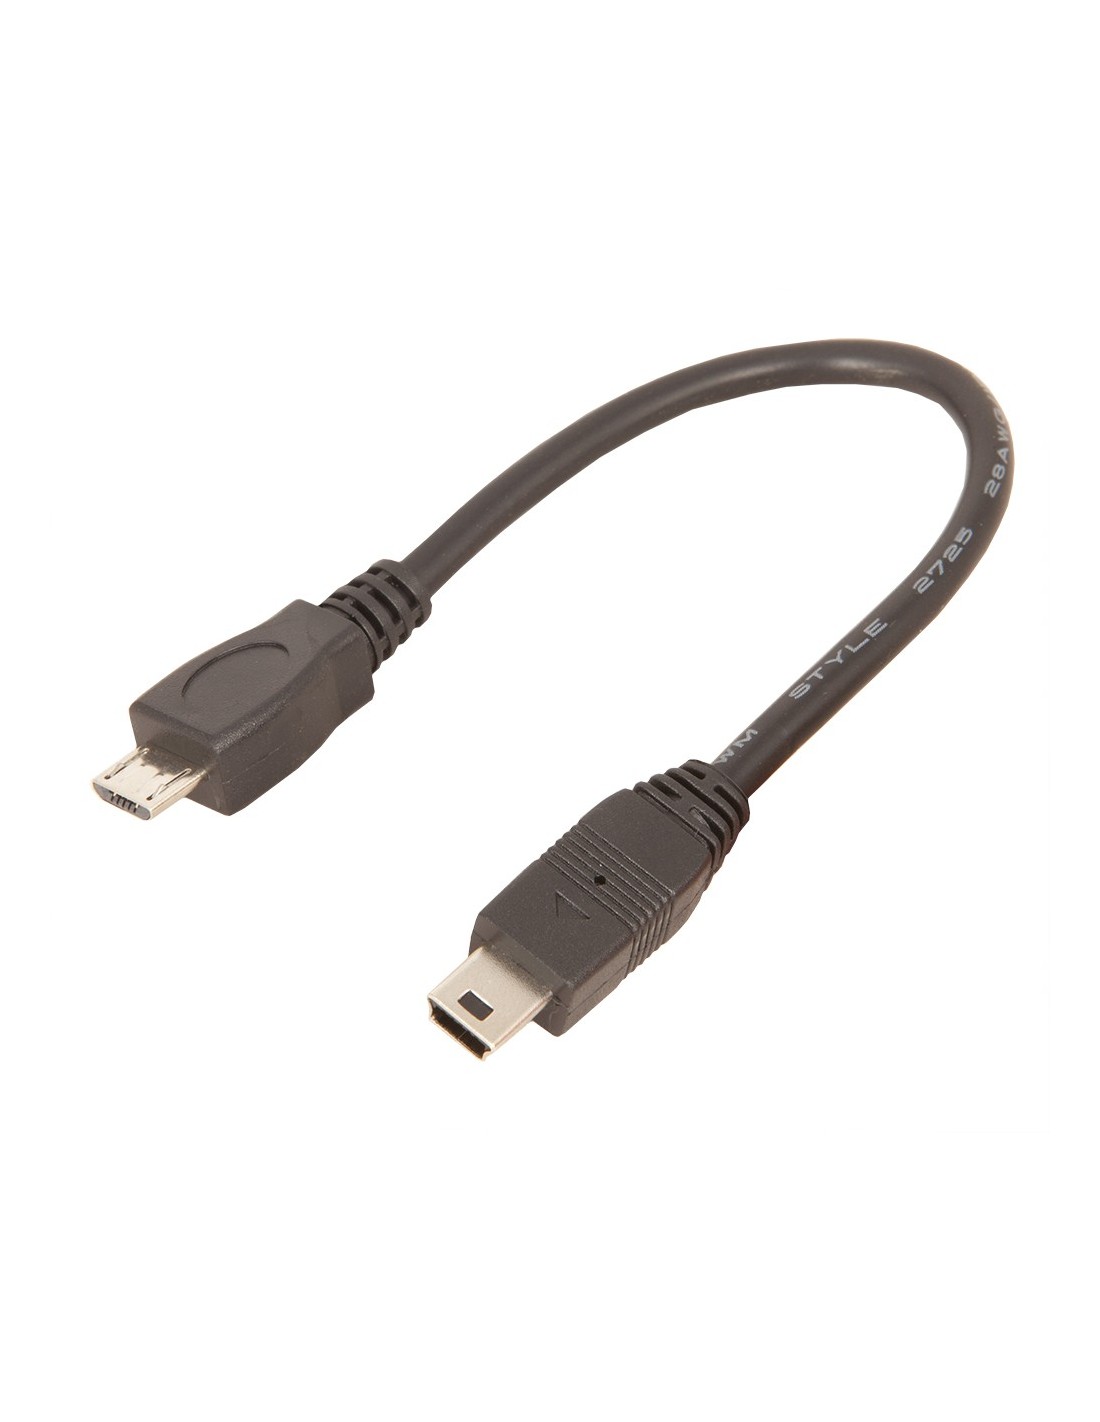 mini usb micro usb cable